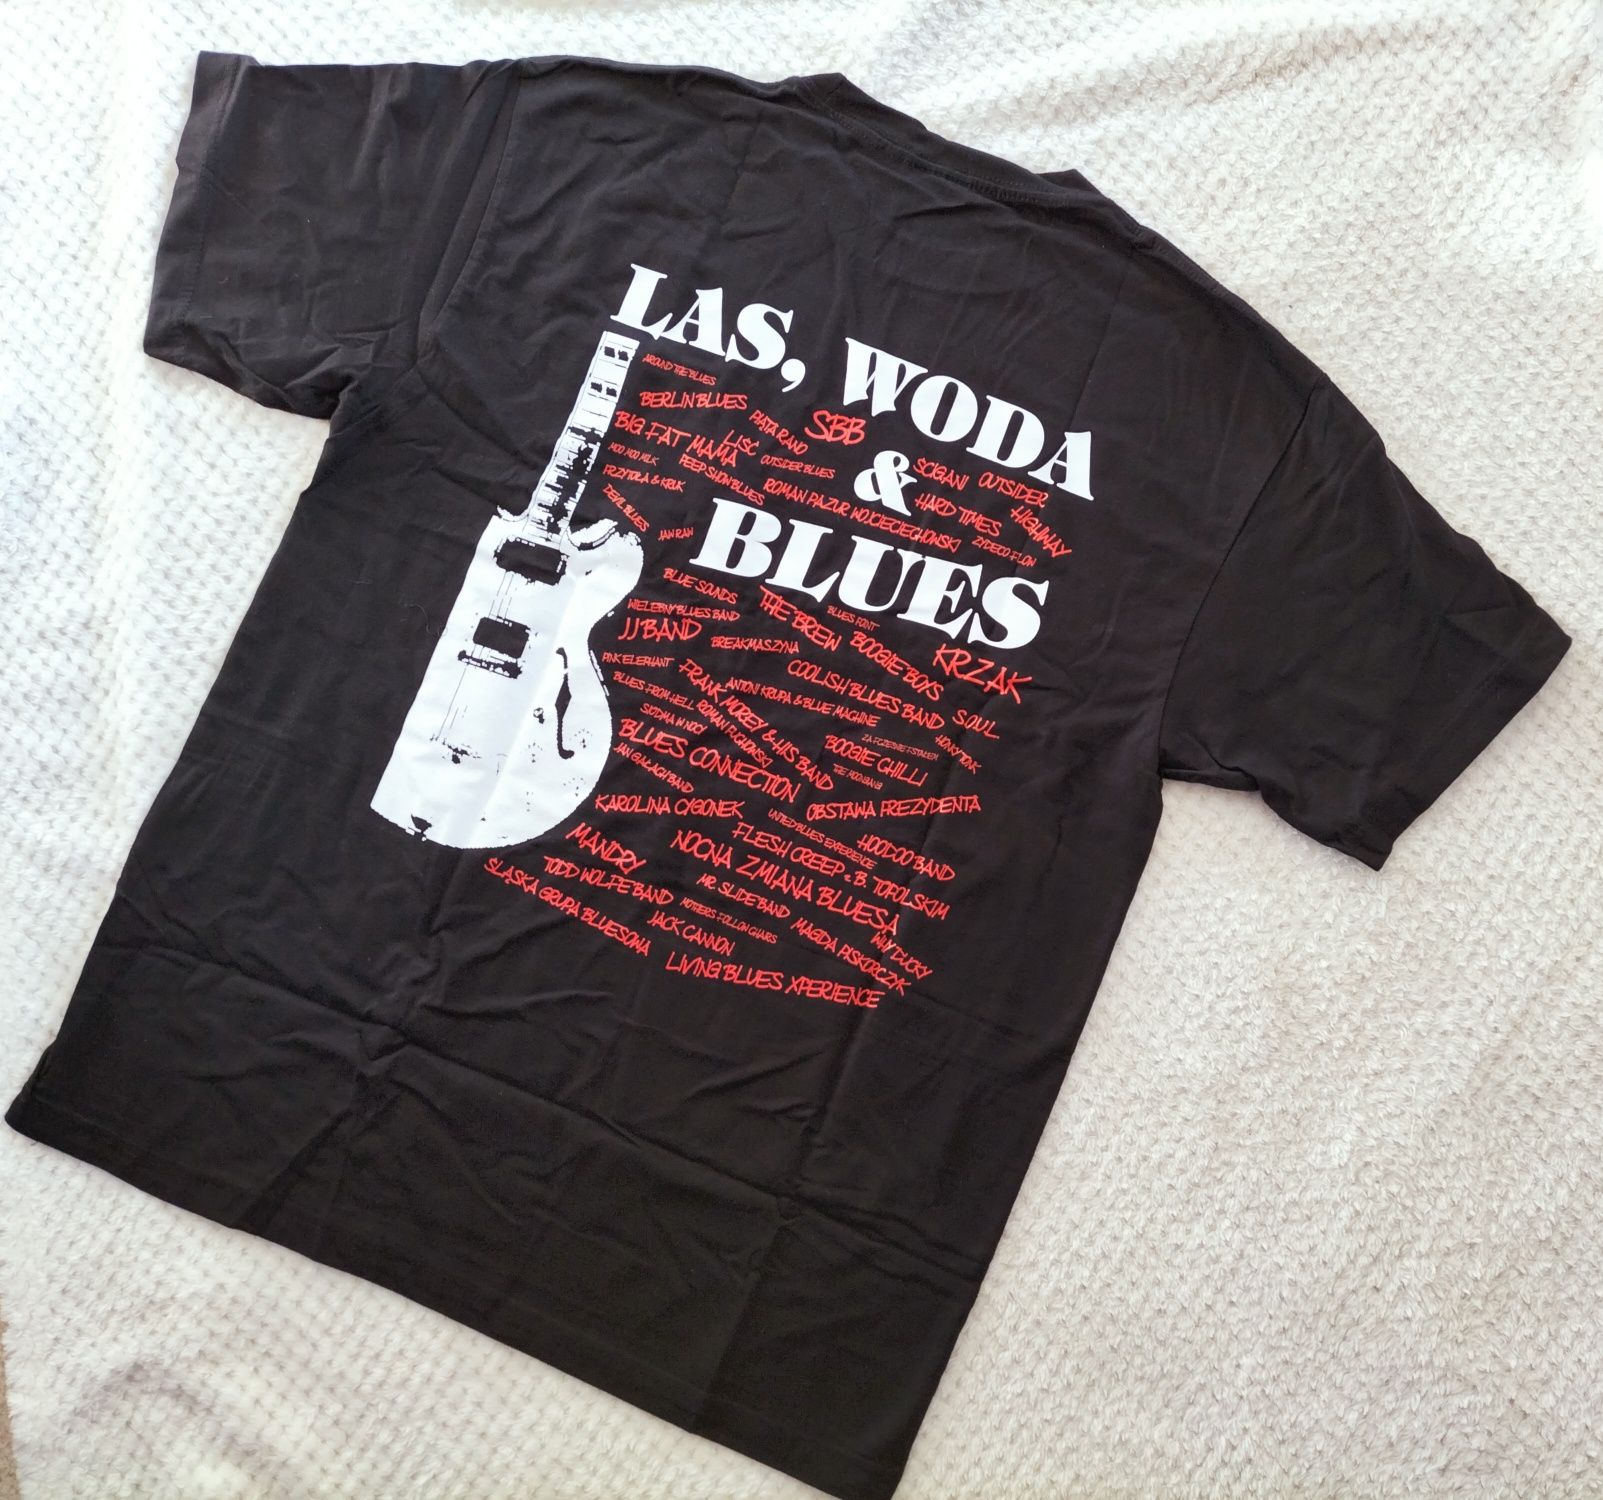 T-shirt koszulka z krótkim rękawem dekolt okrągły Las woda blues